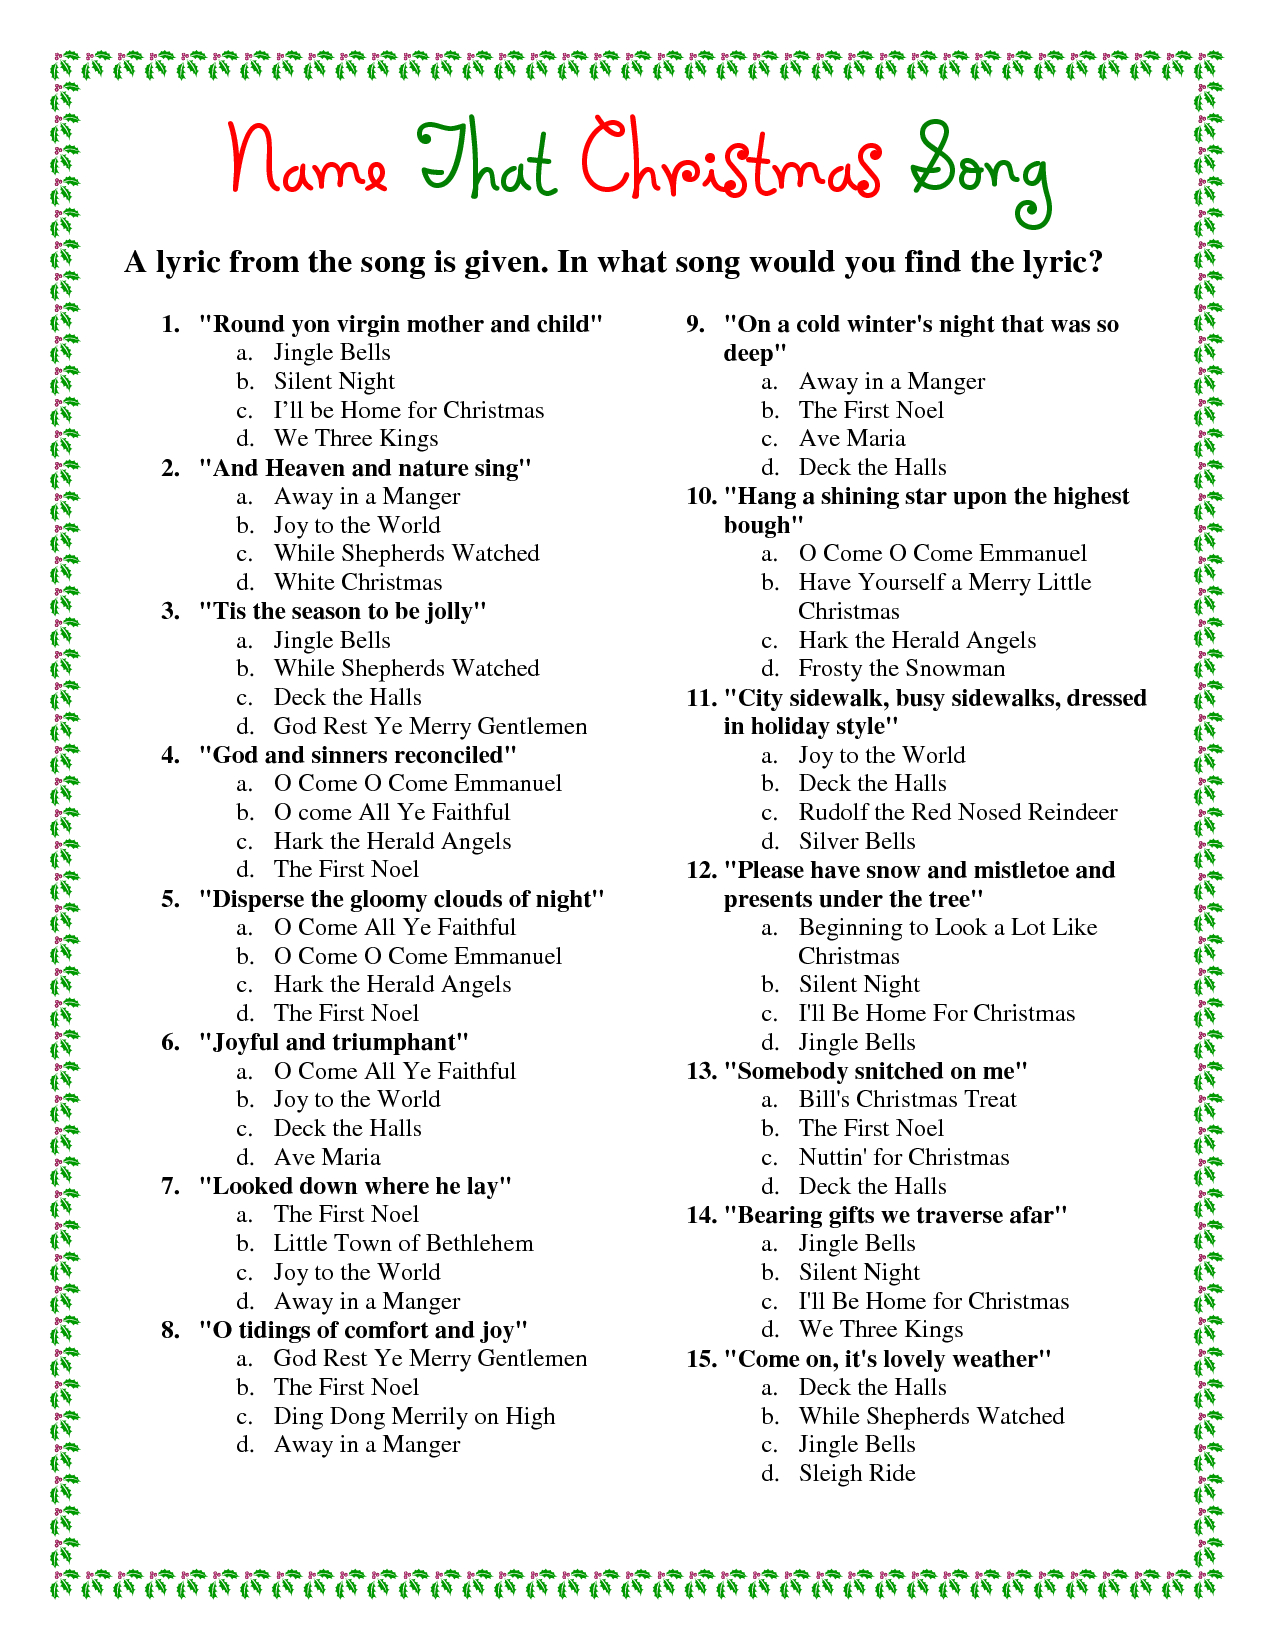 Printable Christmas Song Trivia | Games | Christmas Trivia Games - Free Printable Christmas Song Picture Game